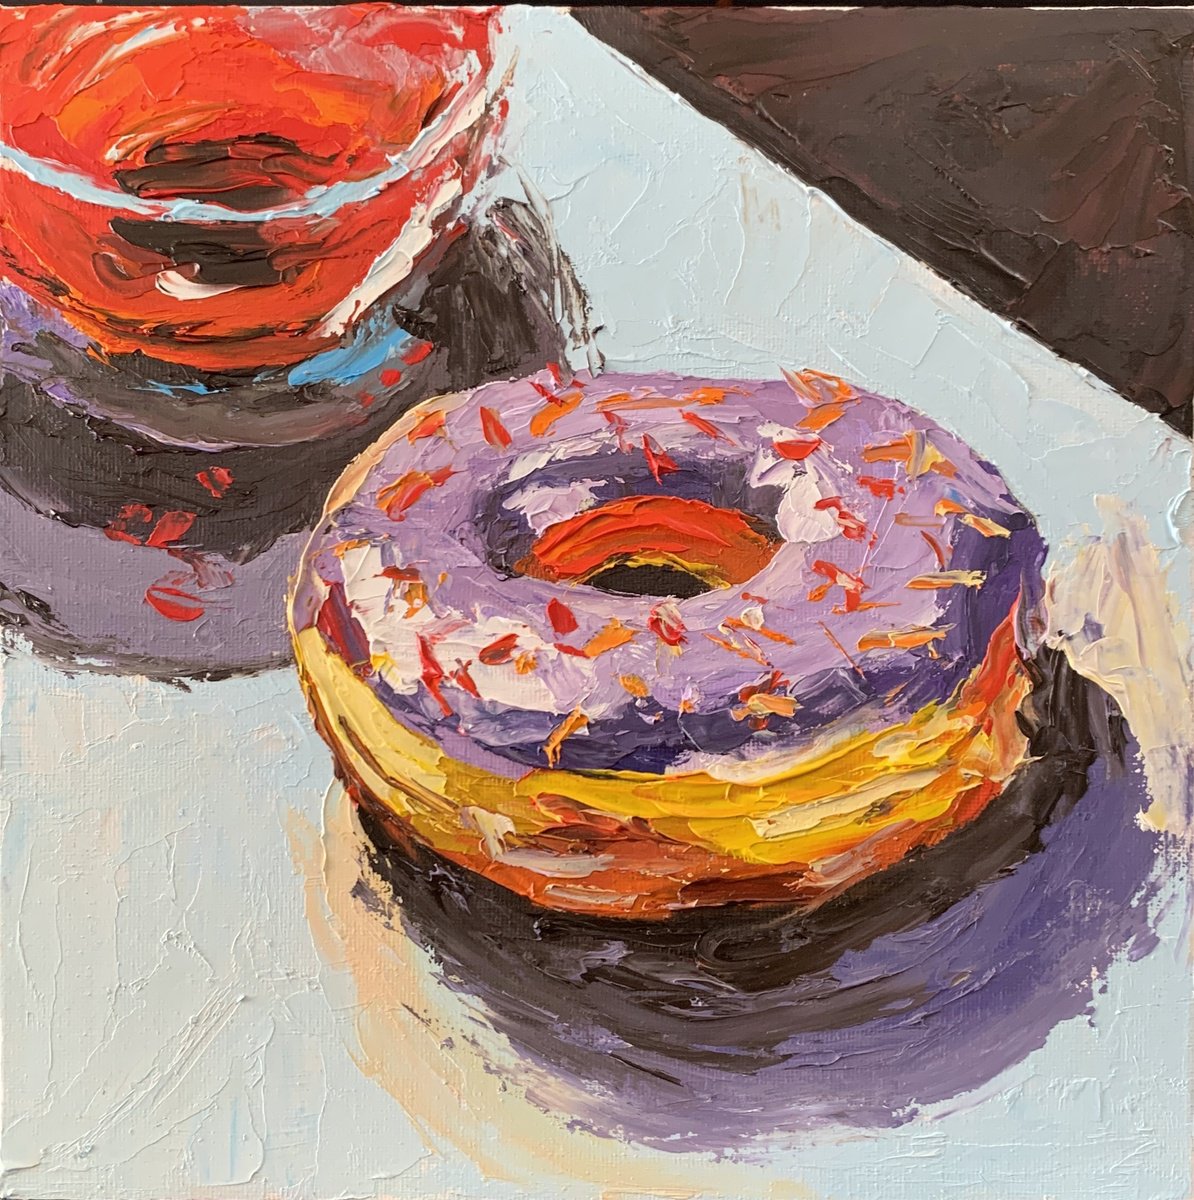 Donuts. by Vita Schagen